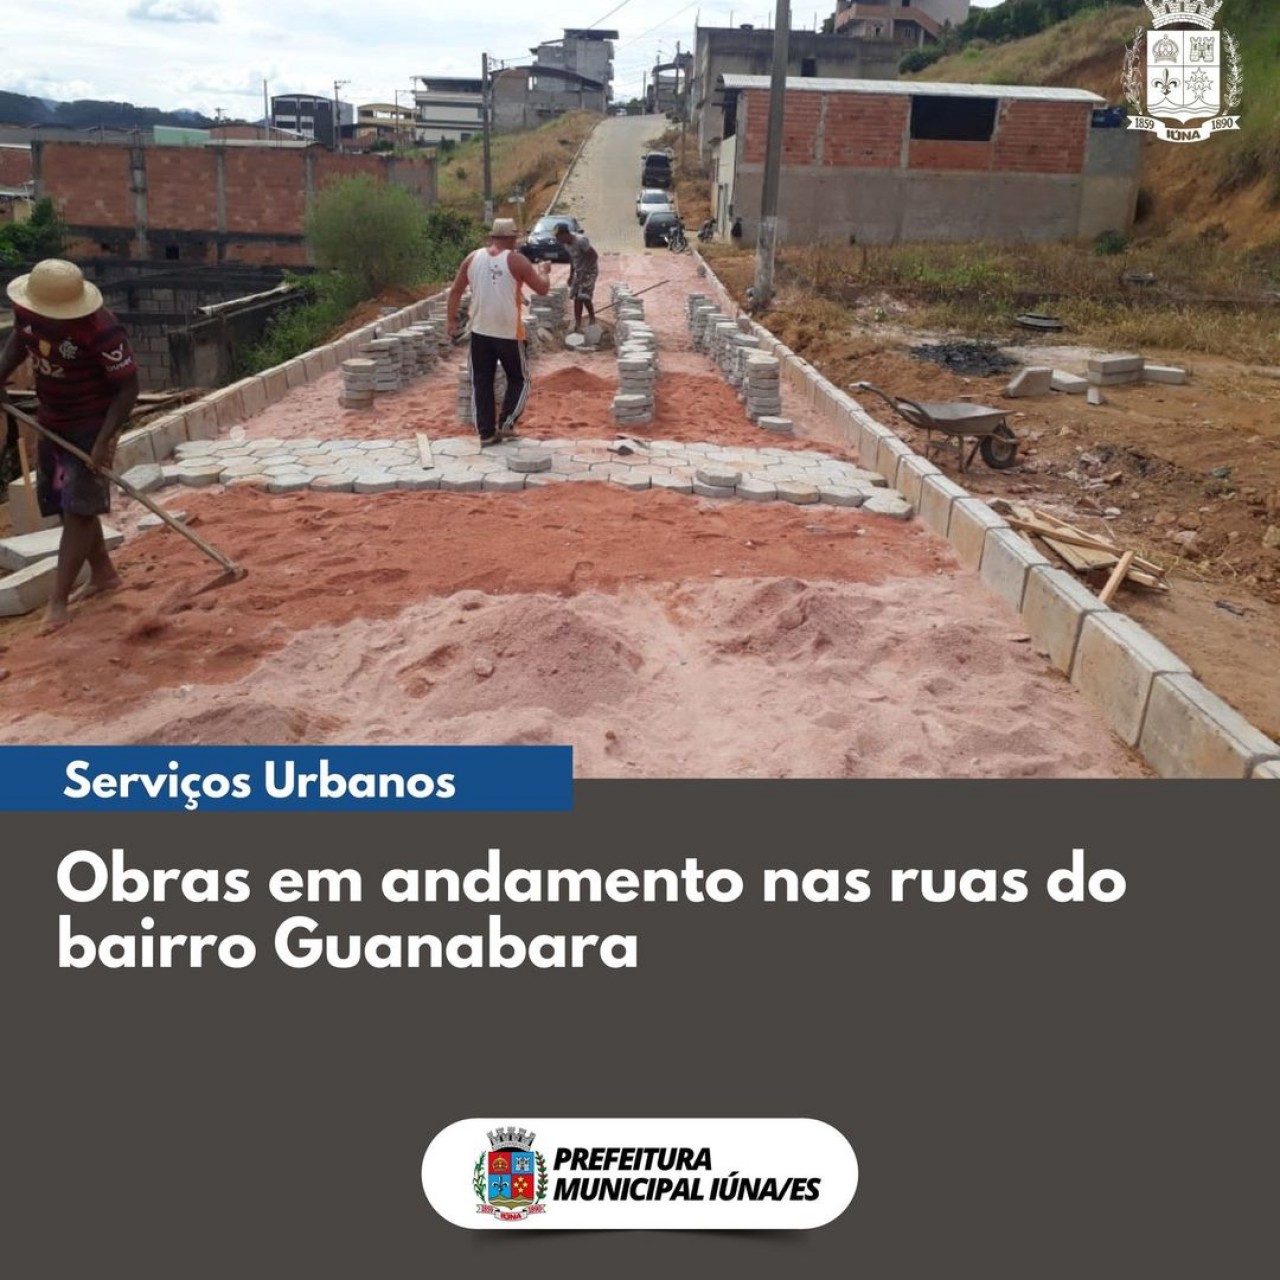 OBRAS 91 - obras de rede de esgoto, drenagem e calçamento no bairro Guanabara